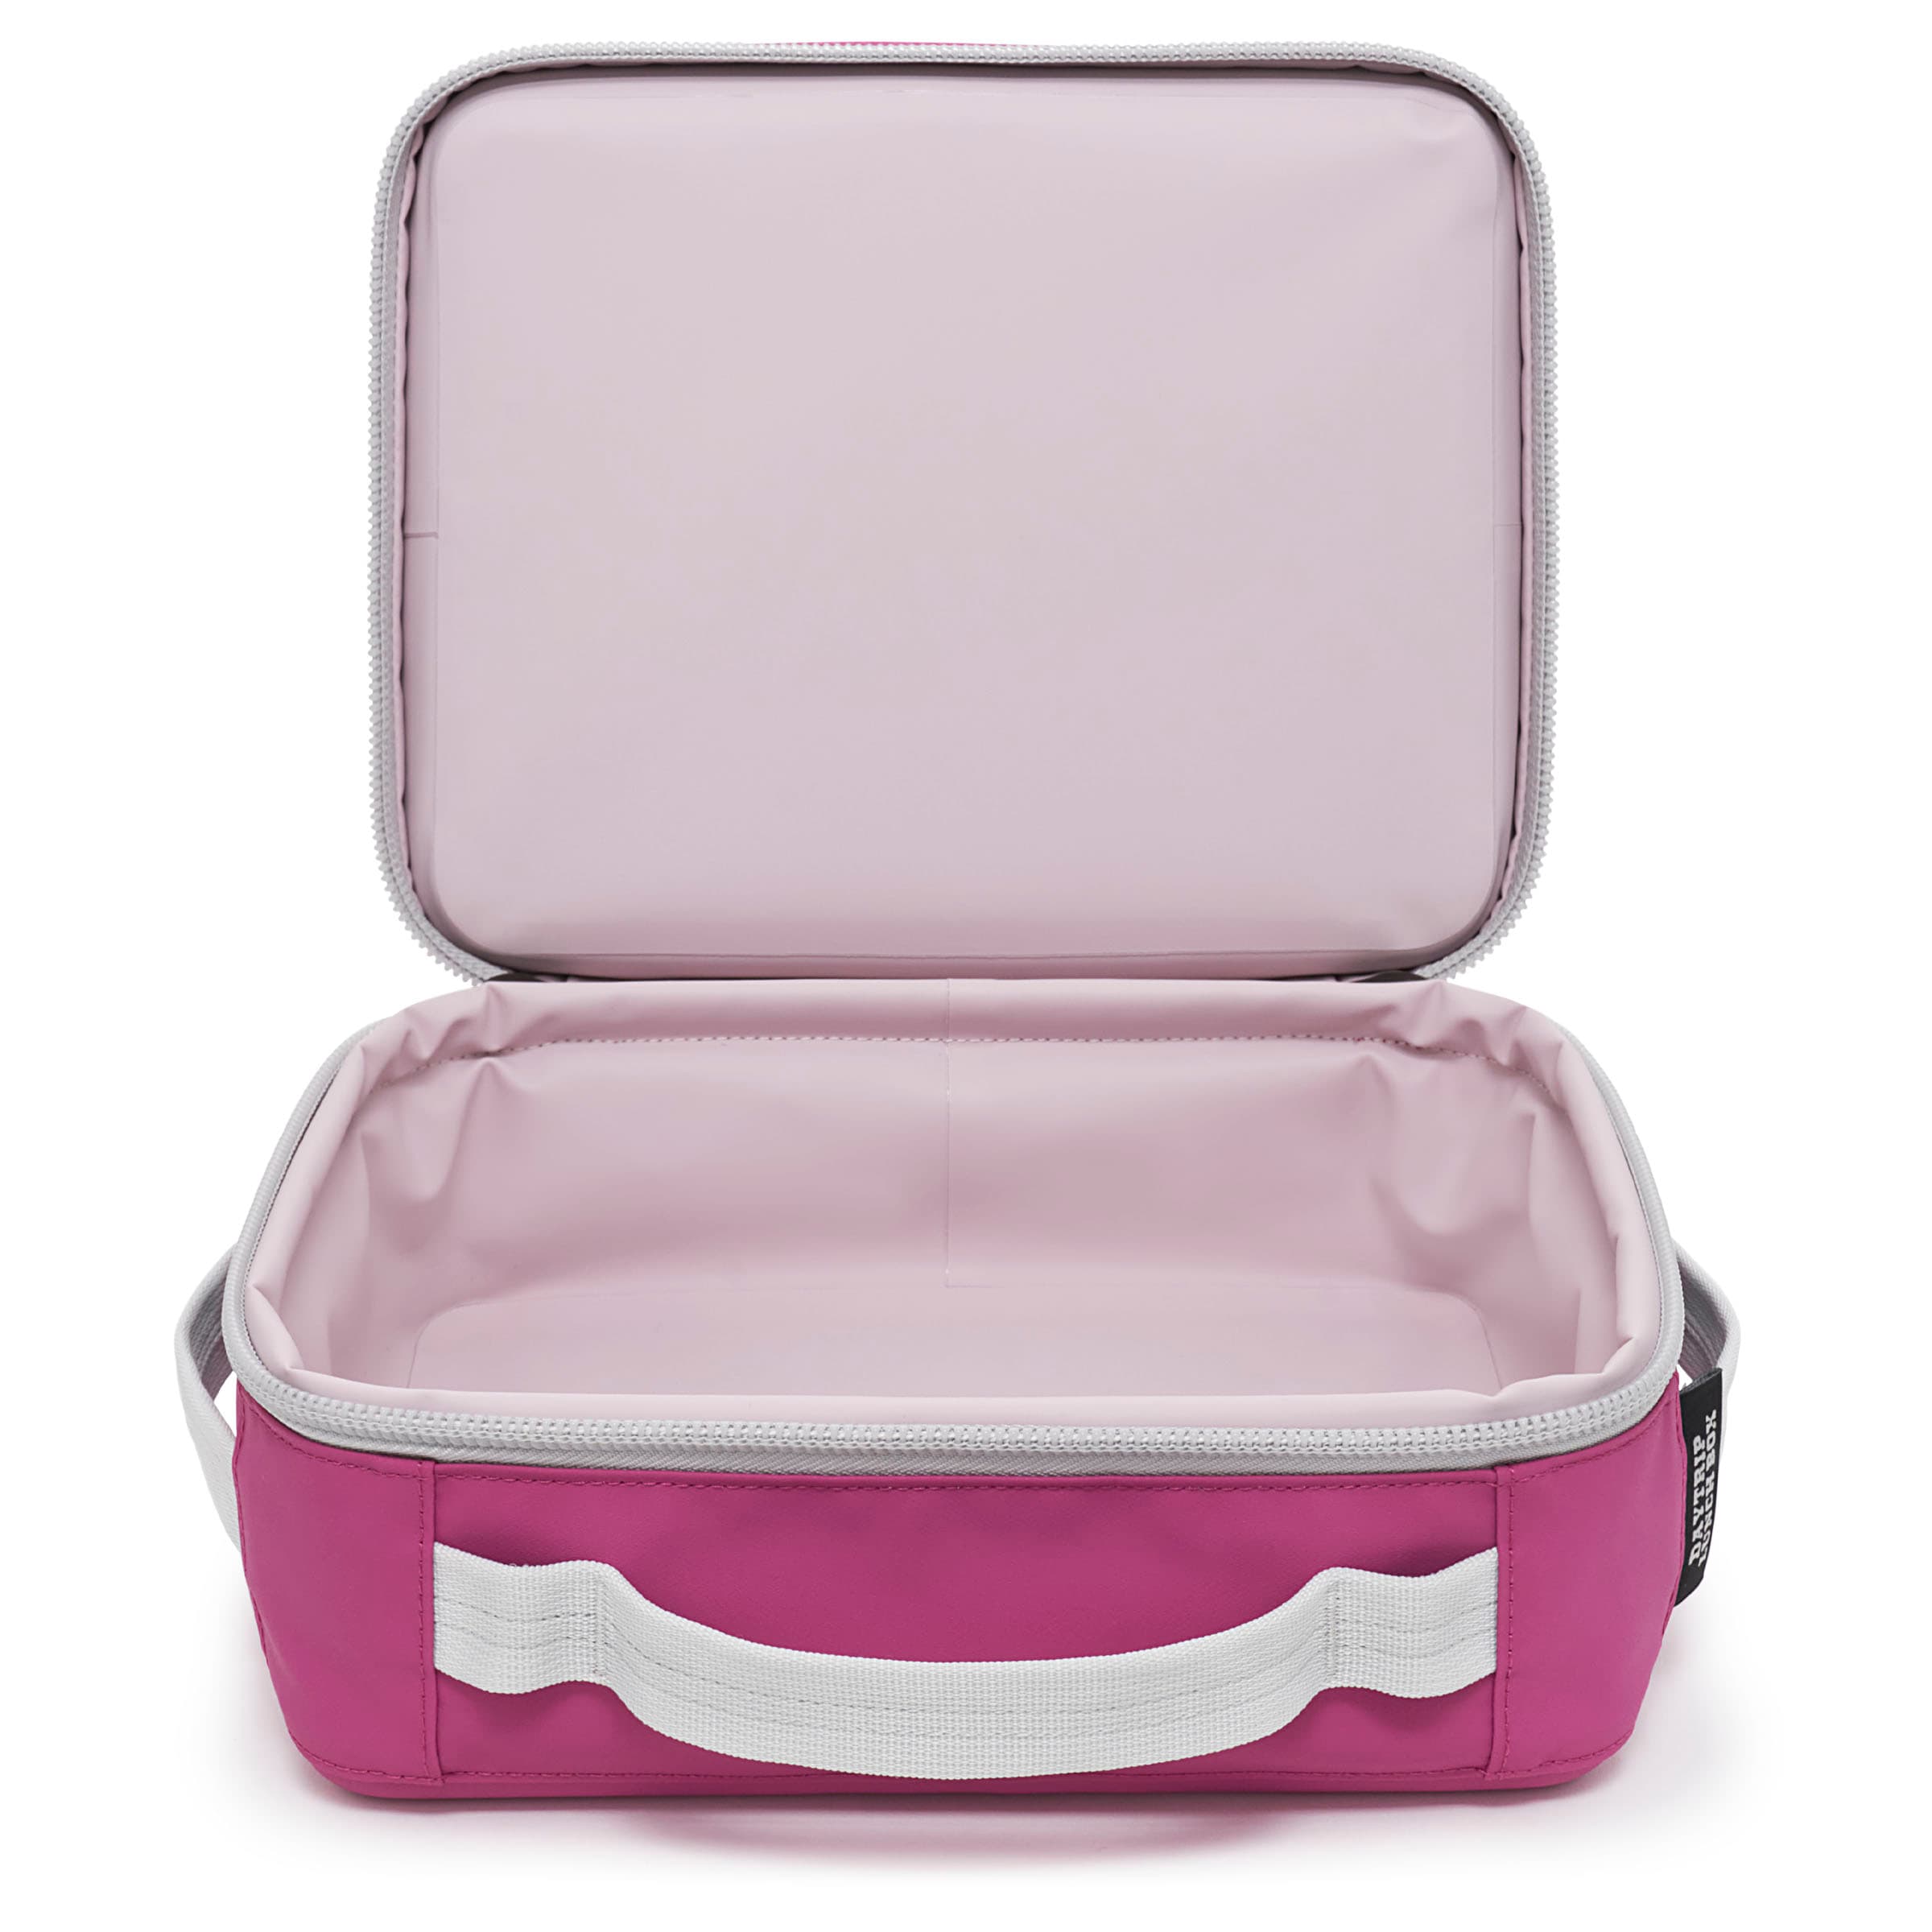 Yeti, Accessories, Very Rare Light Pink Yeti Daytrip Lunchbox